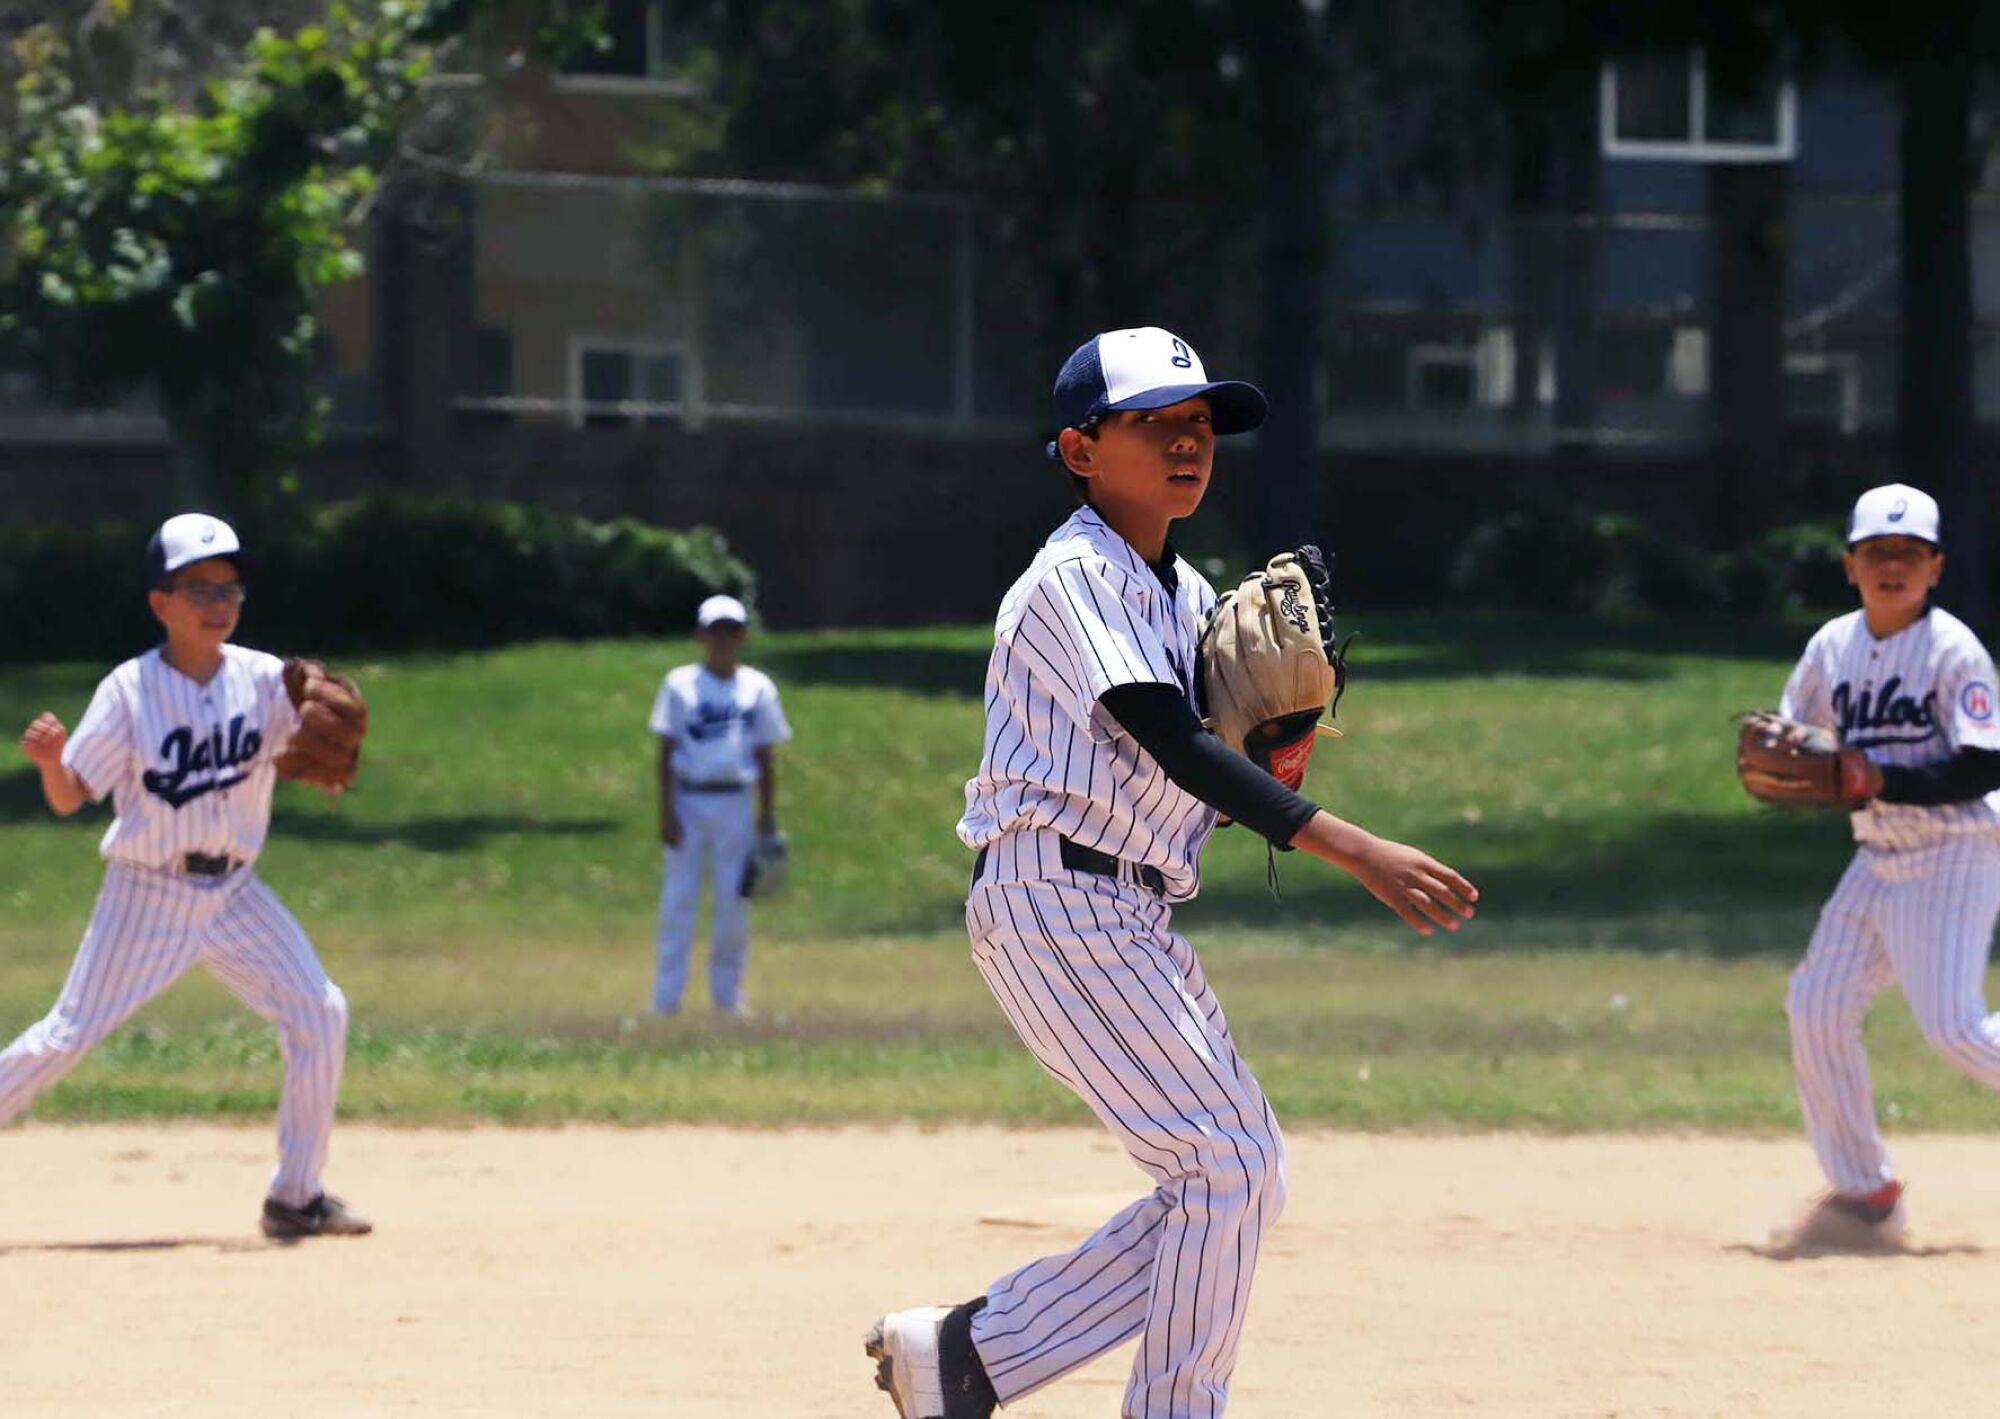 Юный бейсболист бросает мяч